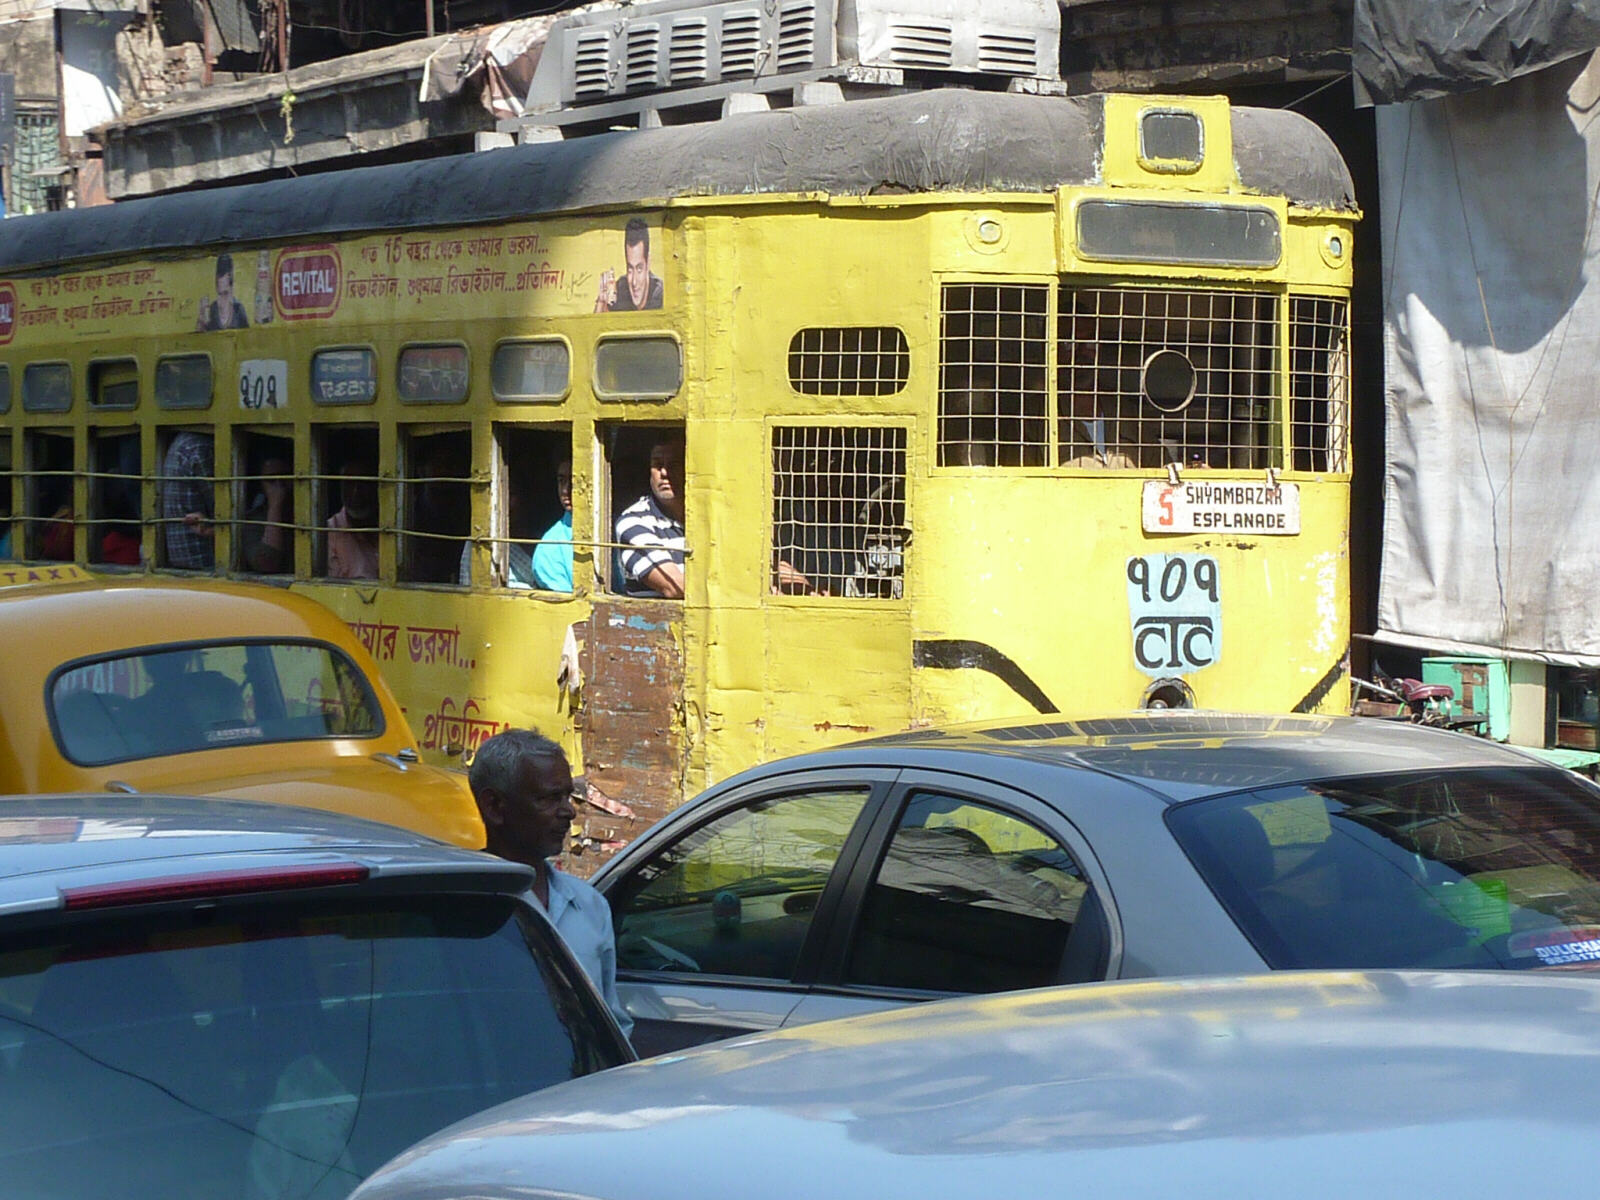 A tram in Wellesley Street, Calcutta, India